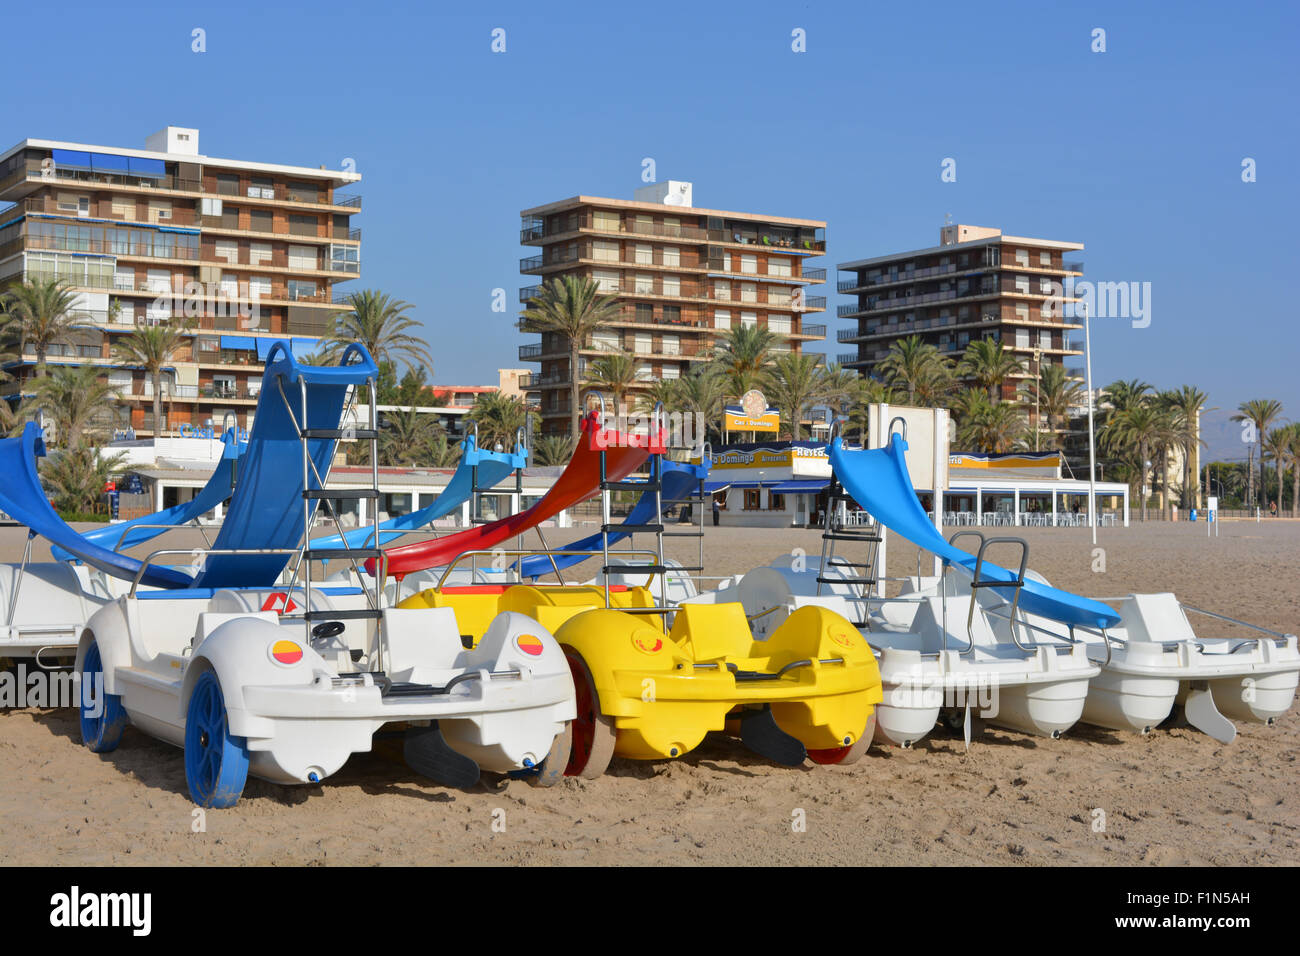 Appartamenti sulla parte anteriore e il pedale barche a noleggio sulla spiaggia di San Juan, Spagna Foto Stock